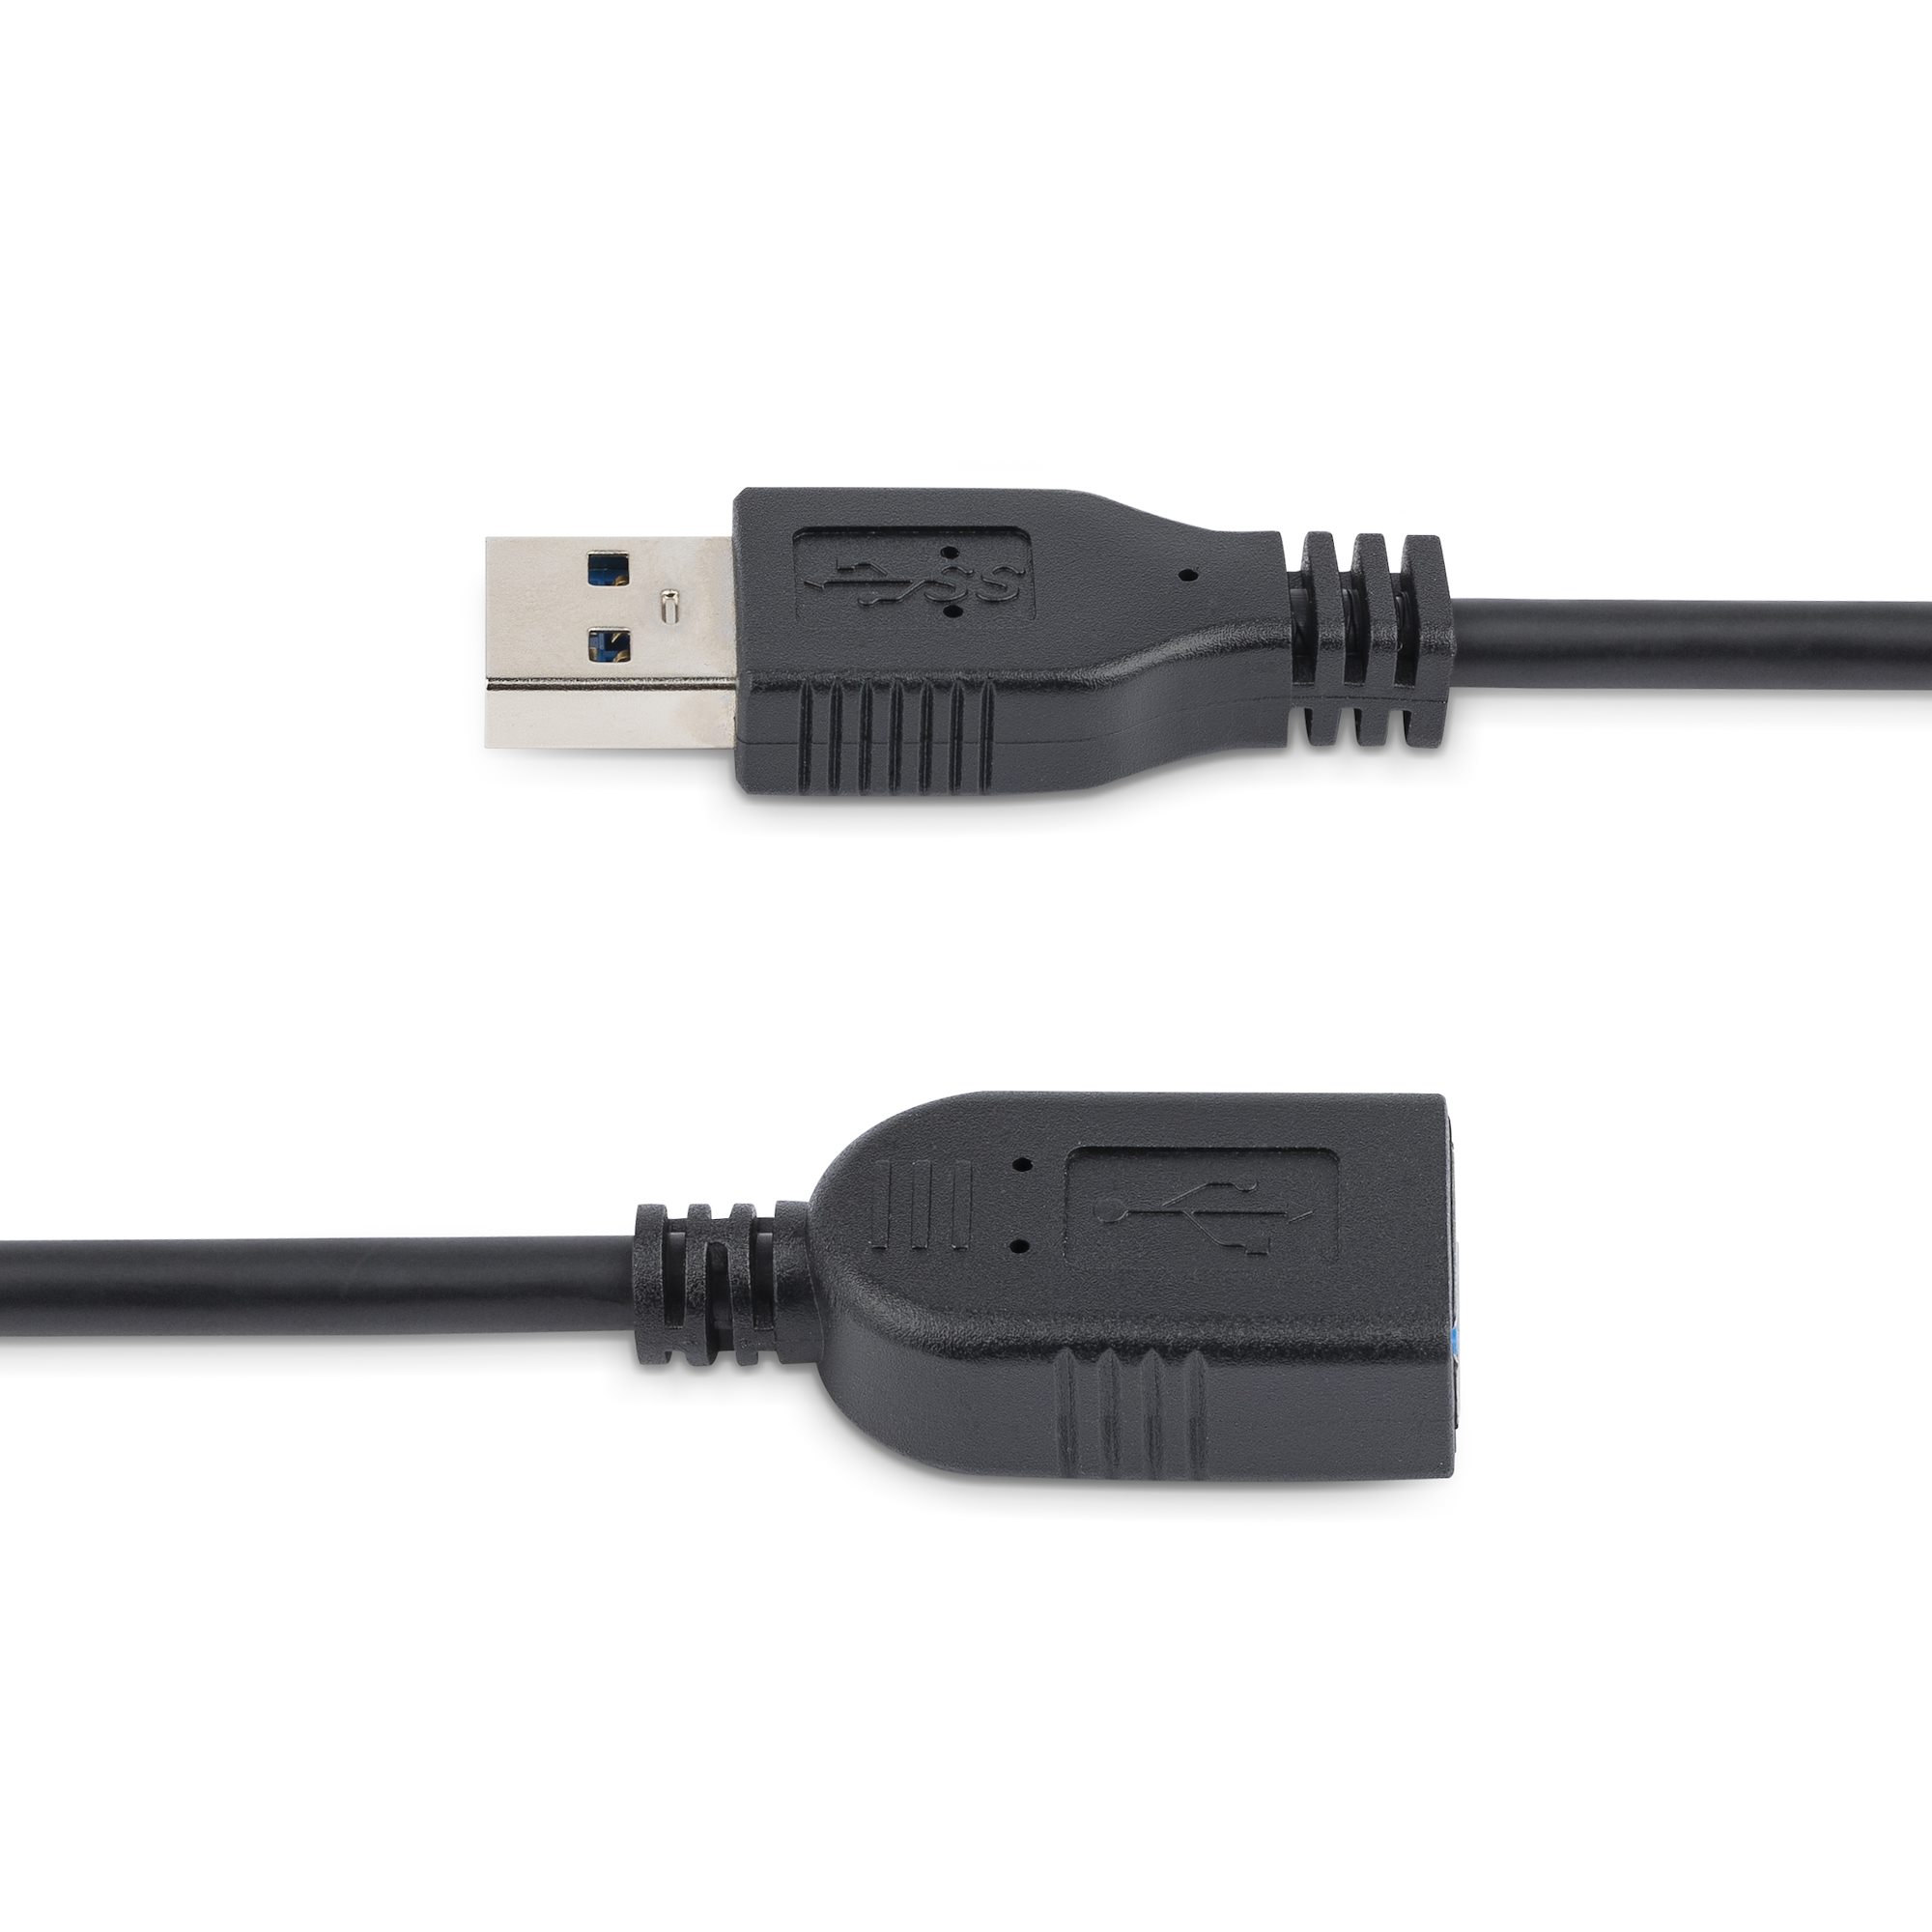 Acheter en ligne STARTECH Câble de rallonge USB - 3 m à bons prix